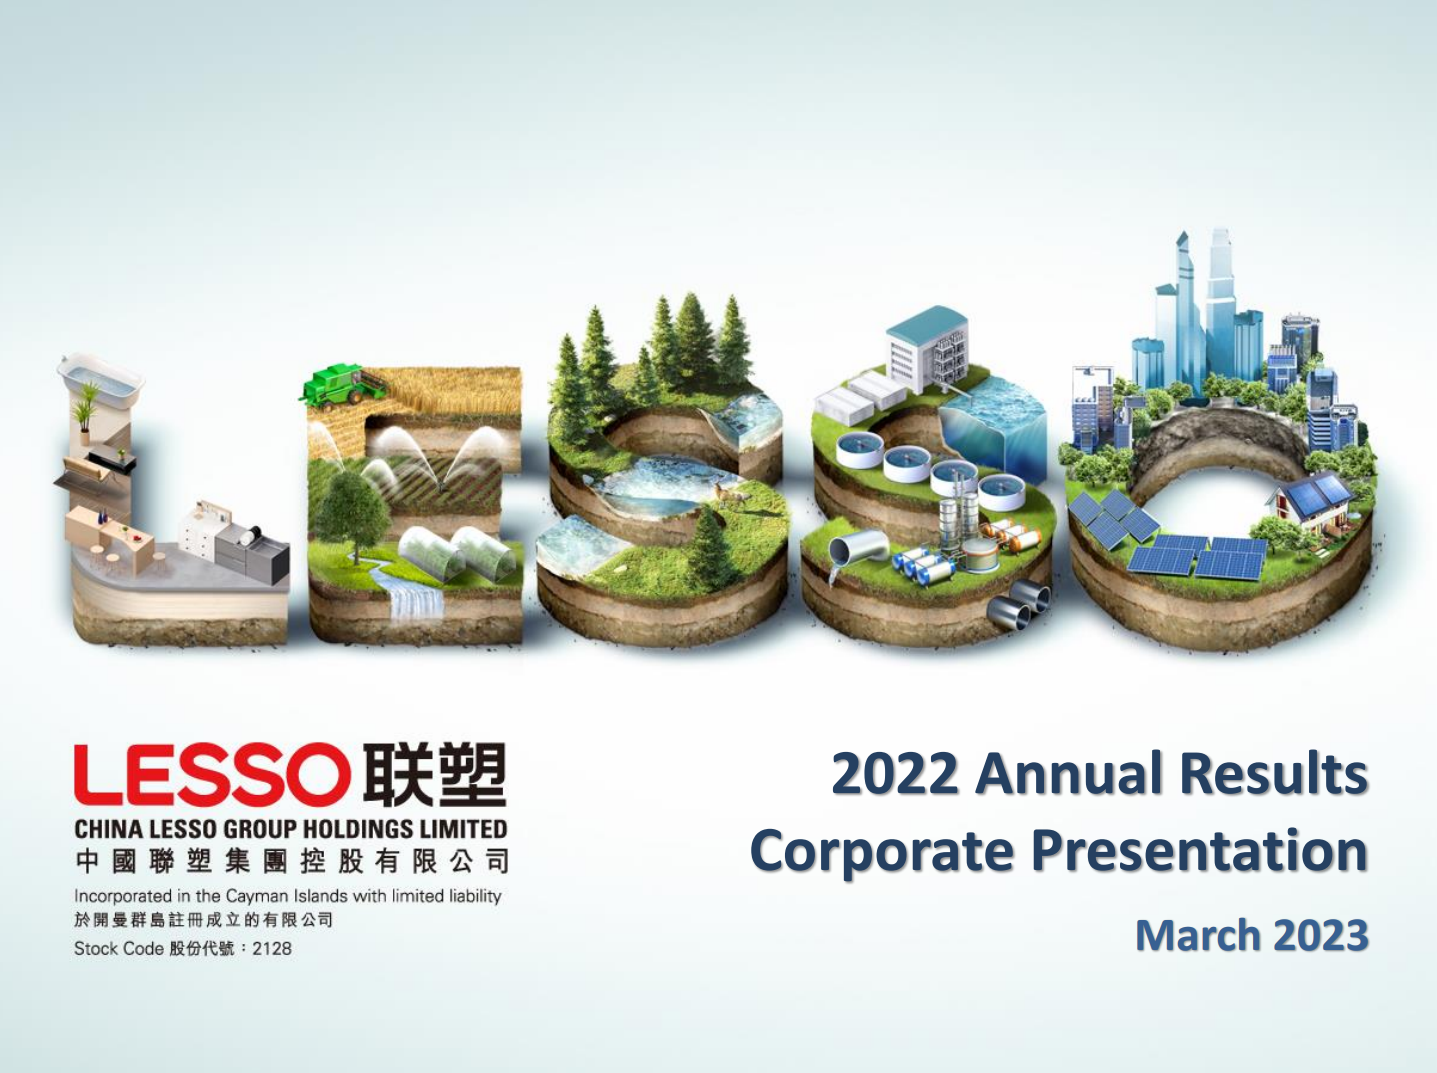 2022 Annual Results Corporate Presentation